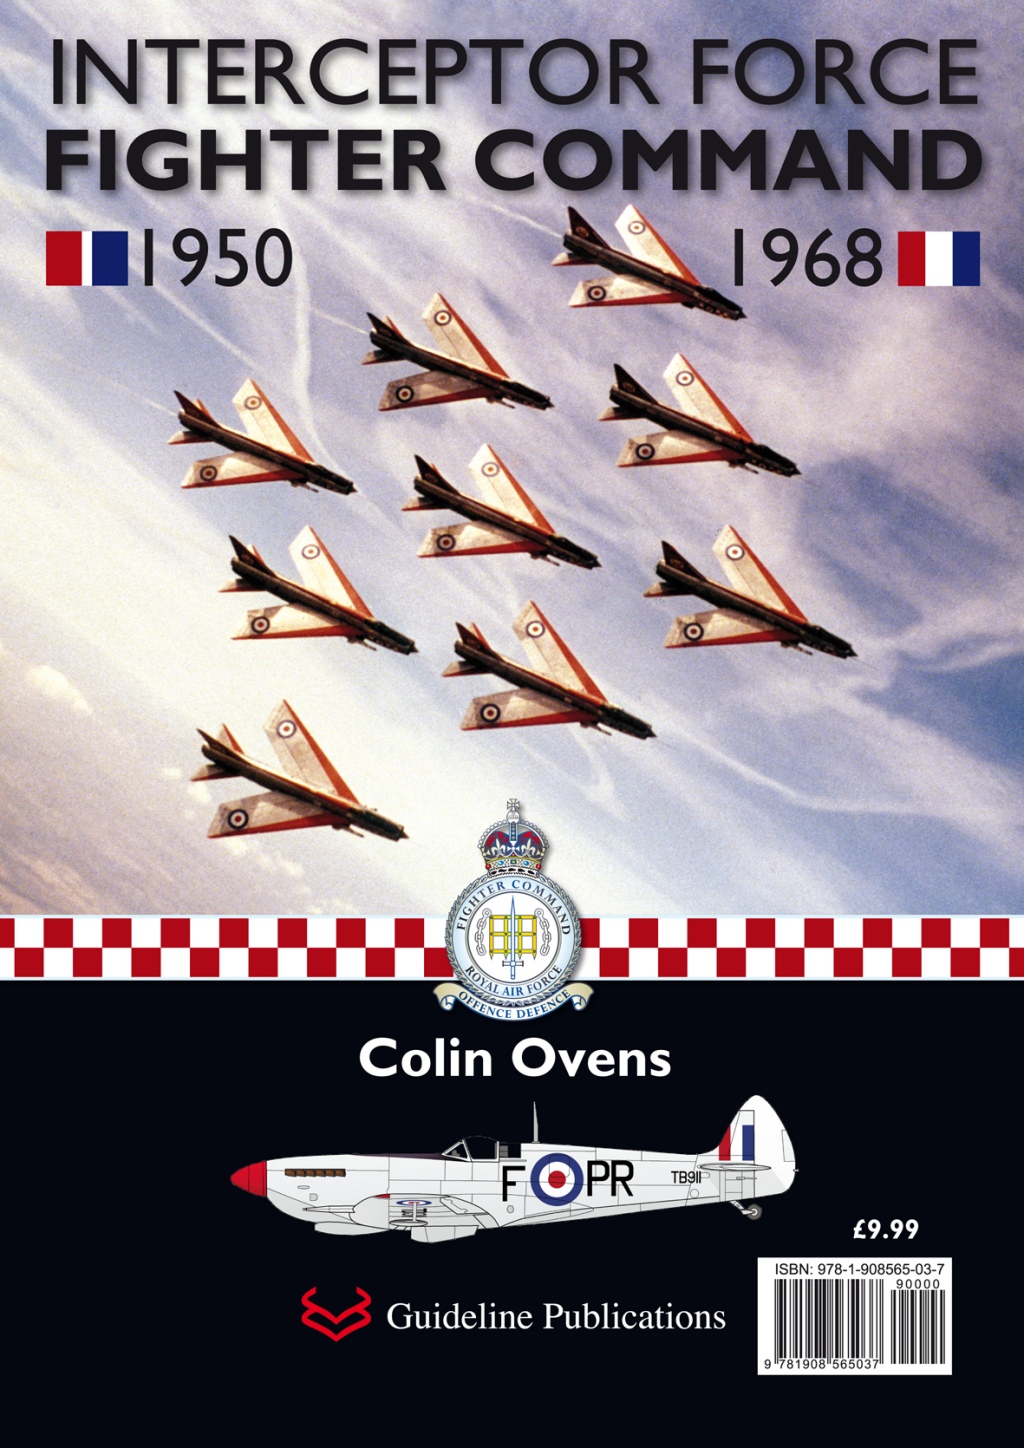 Guideline Publications Ltd Interceptor Force Colin Ovens 